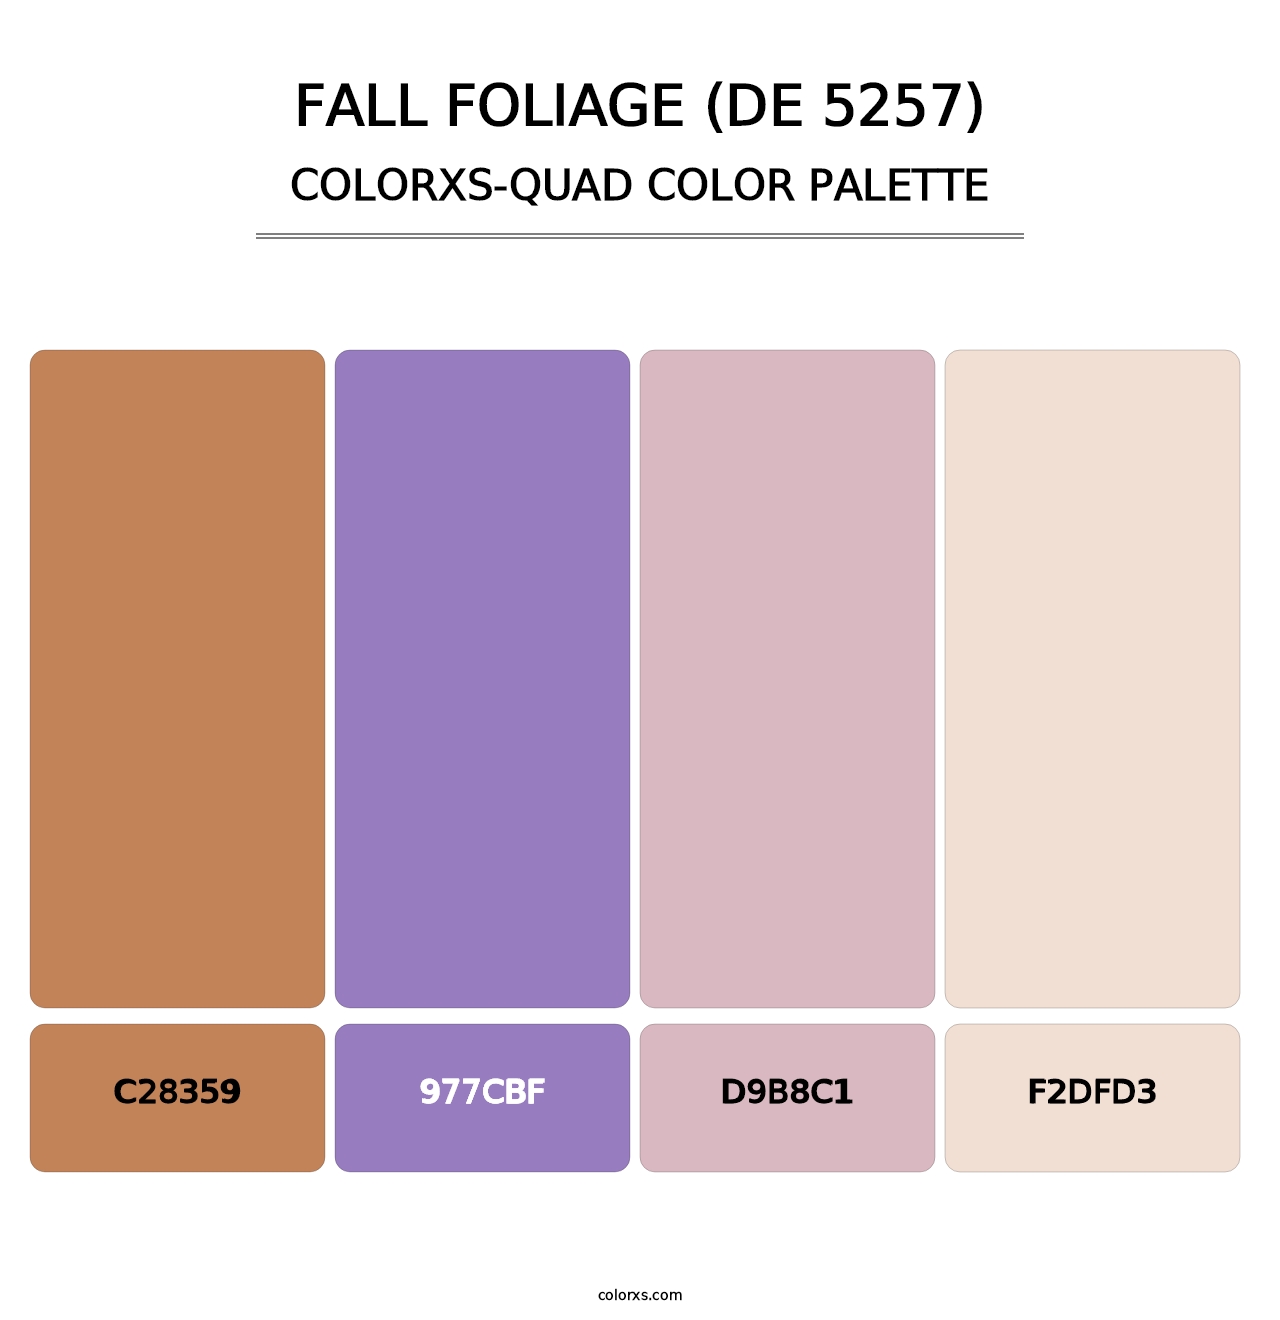 Fall Foliage (DE 5257) - Colorxs Quad Palette